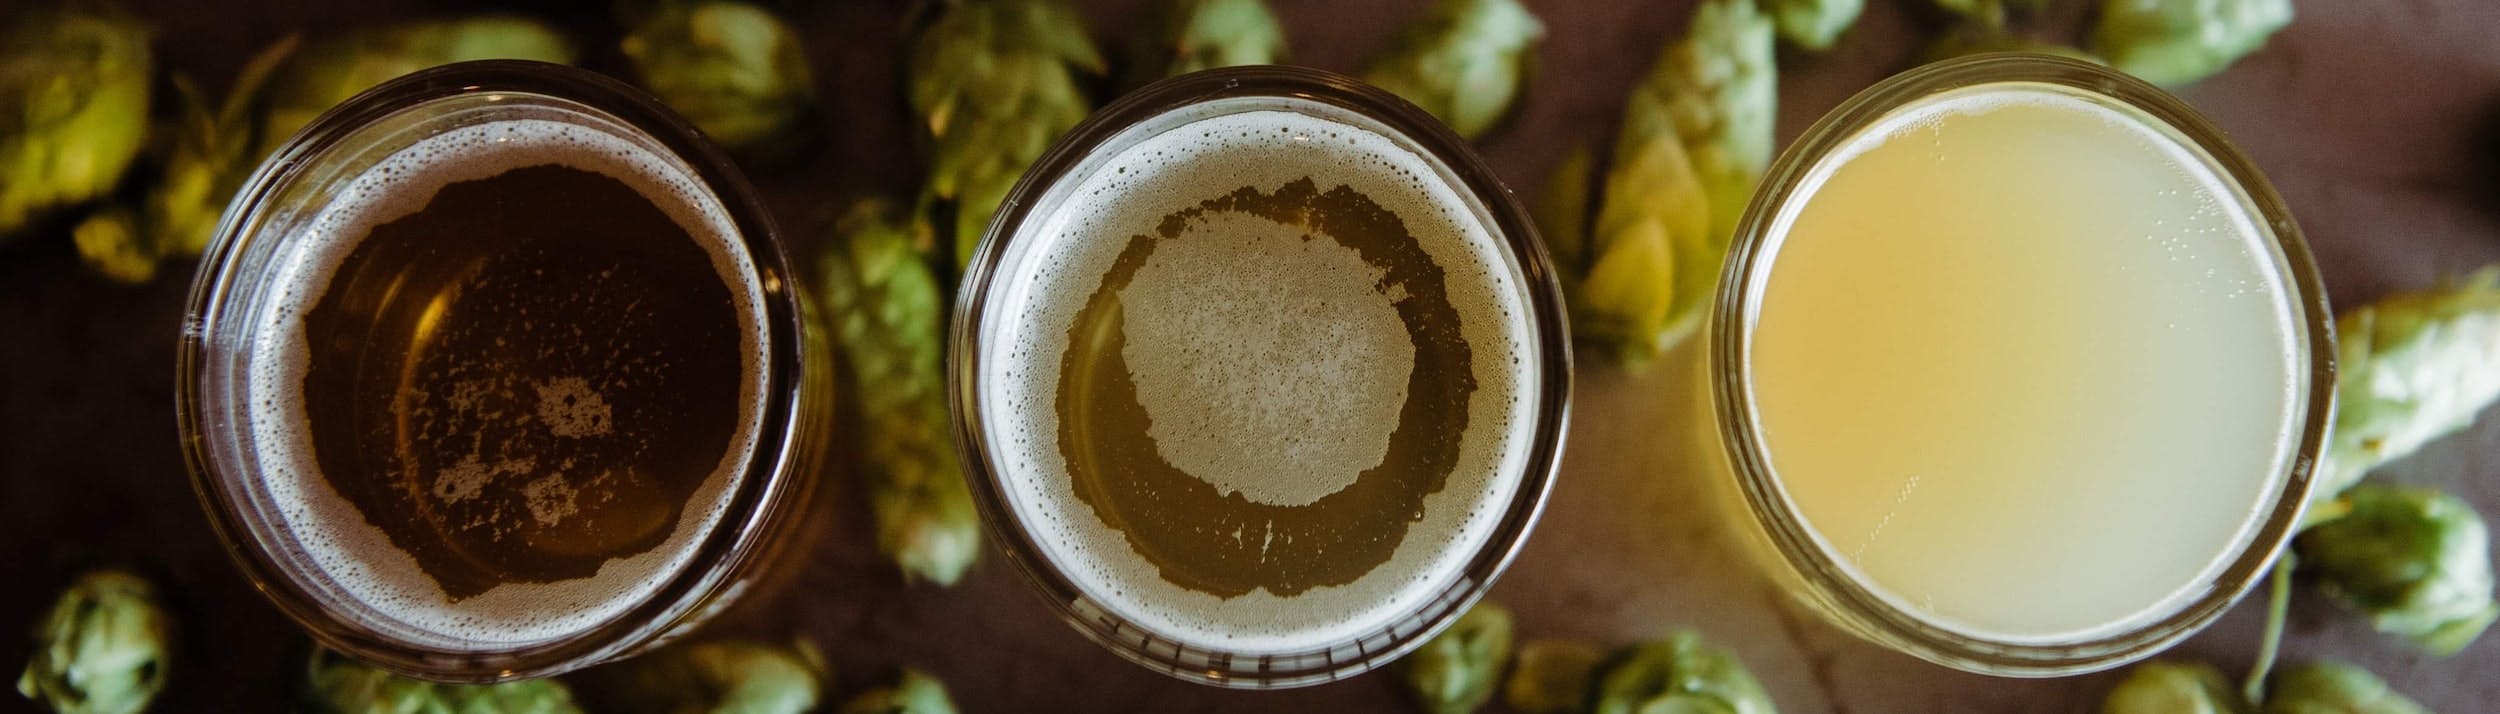 Immagine con 3 bicchieri di birra visti dall'alto e tutto intorno ad essi molti luppoli verdi